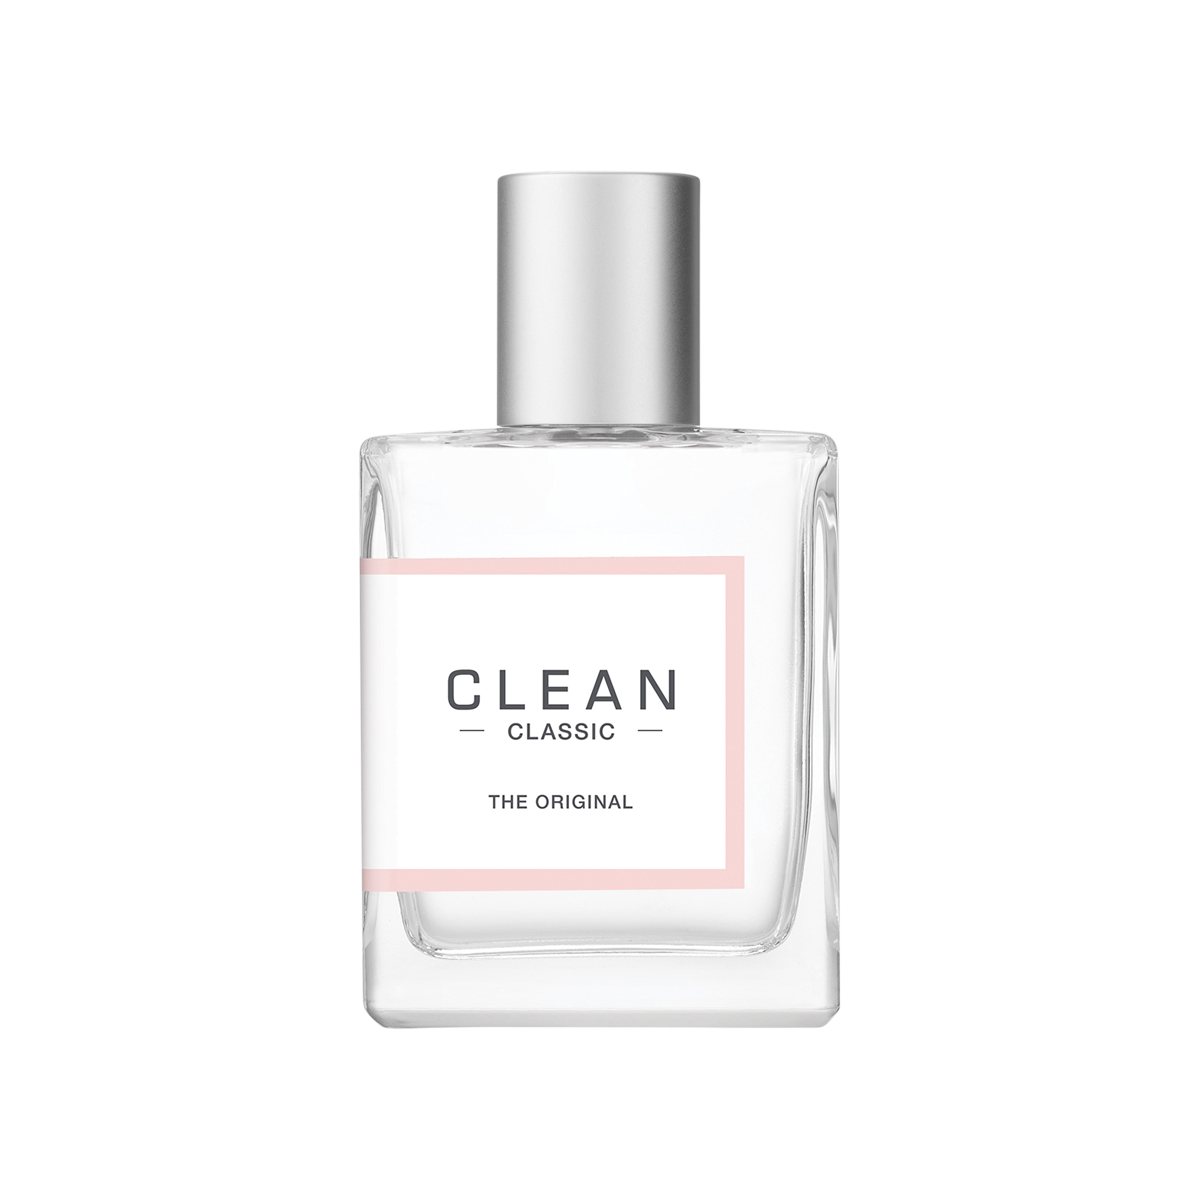 CLEAN BEAUTY - CLEAN CLASSIC The Original Eau de Parfum